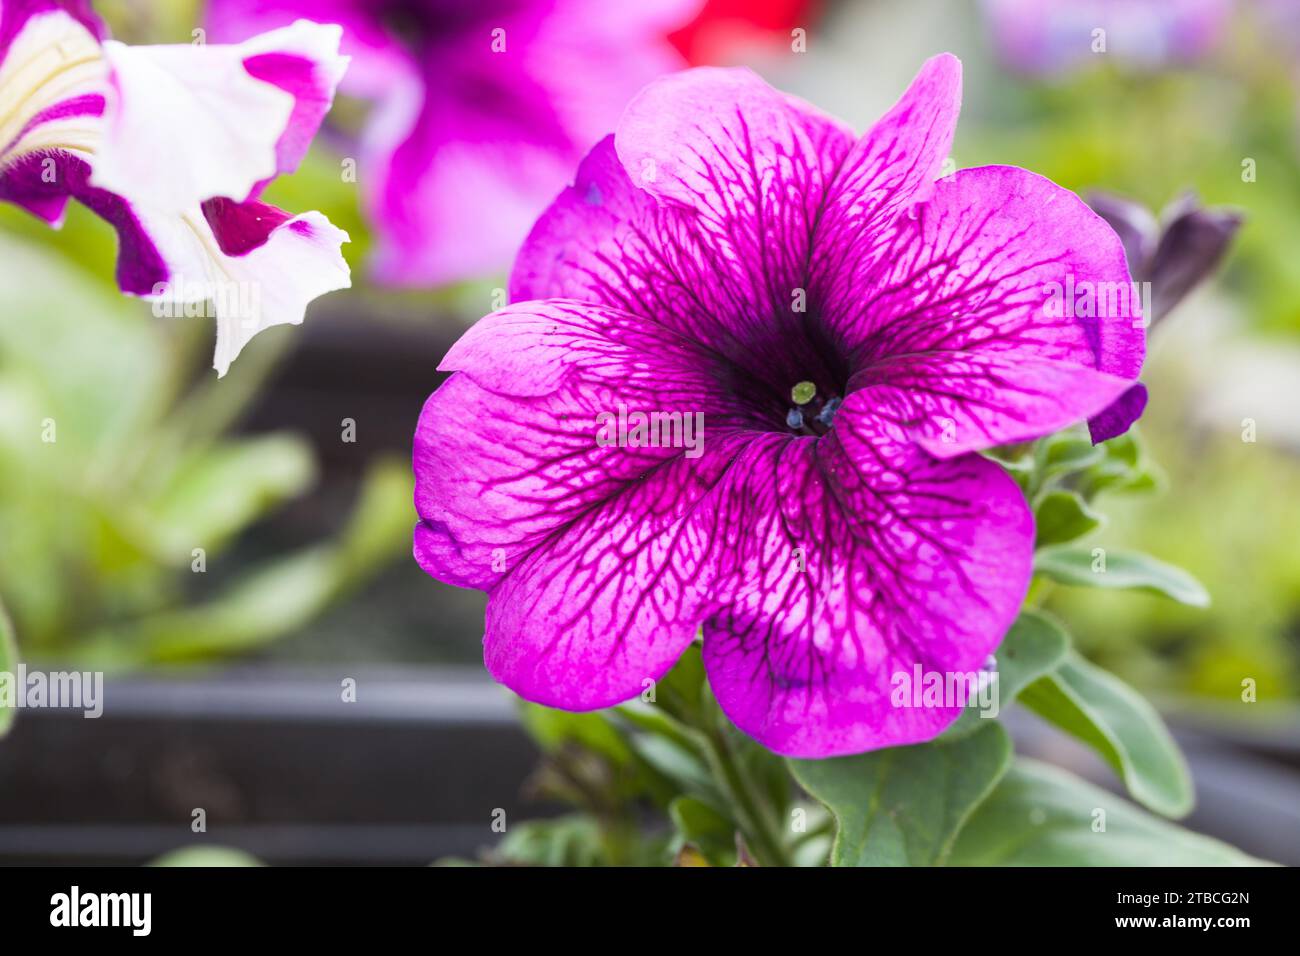 Fiore di petunia viola che cresce in un vaso, foto ravvicinata all'aperto con messa a fuoco selettiva Foto Stock